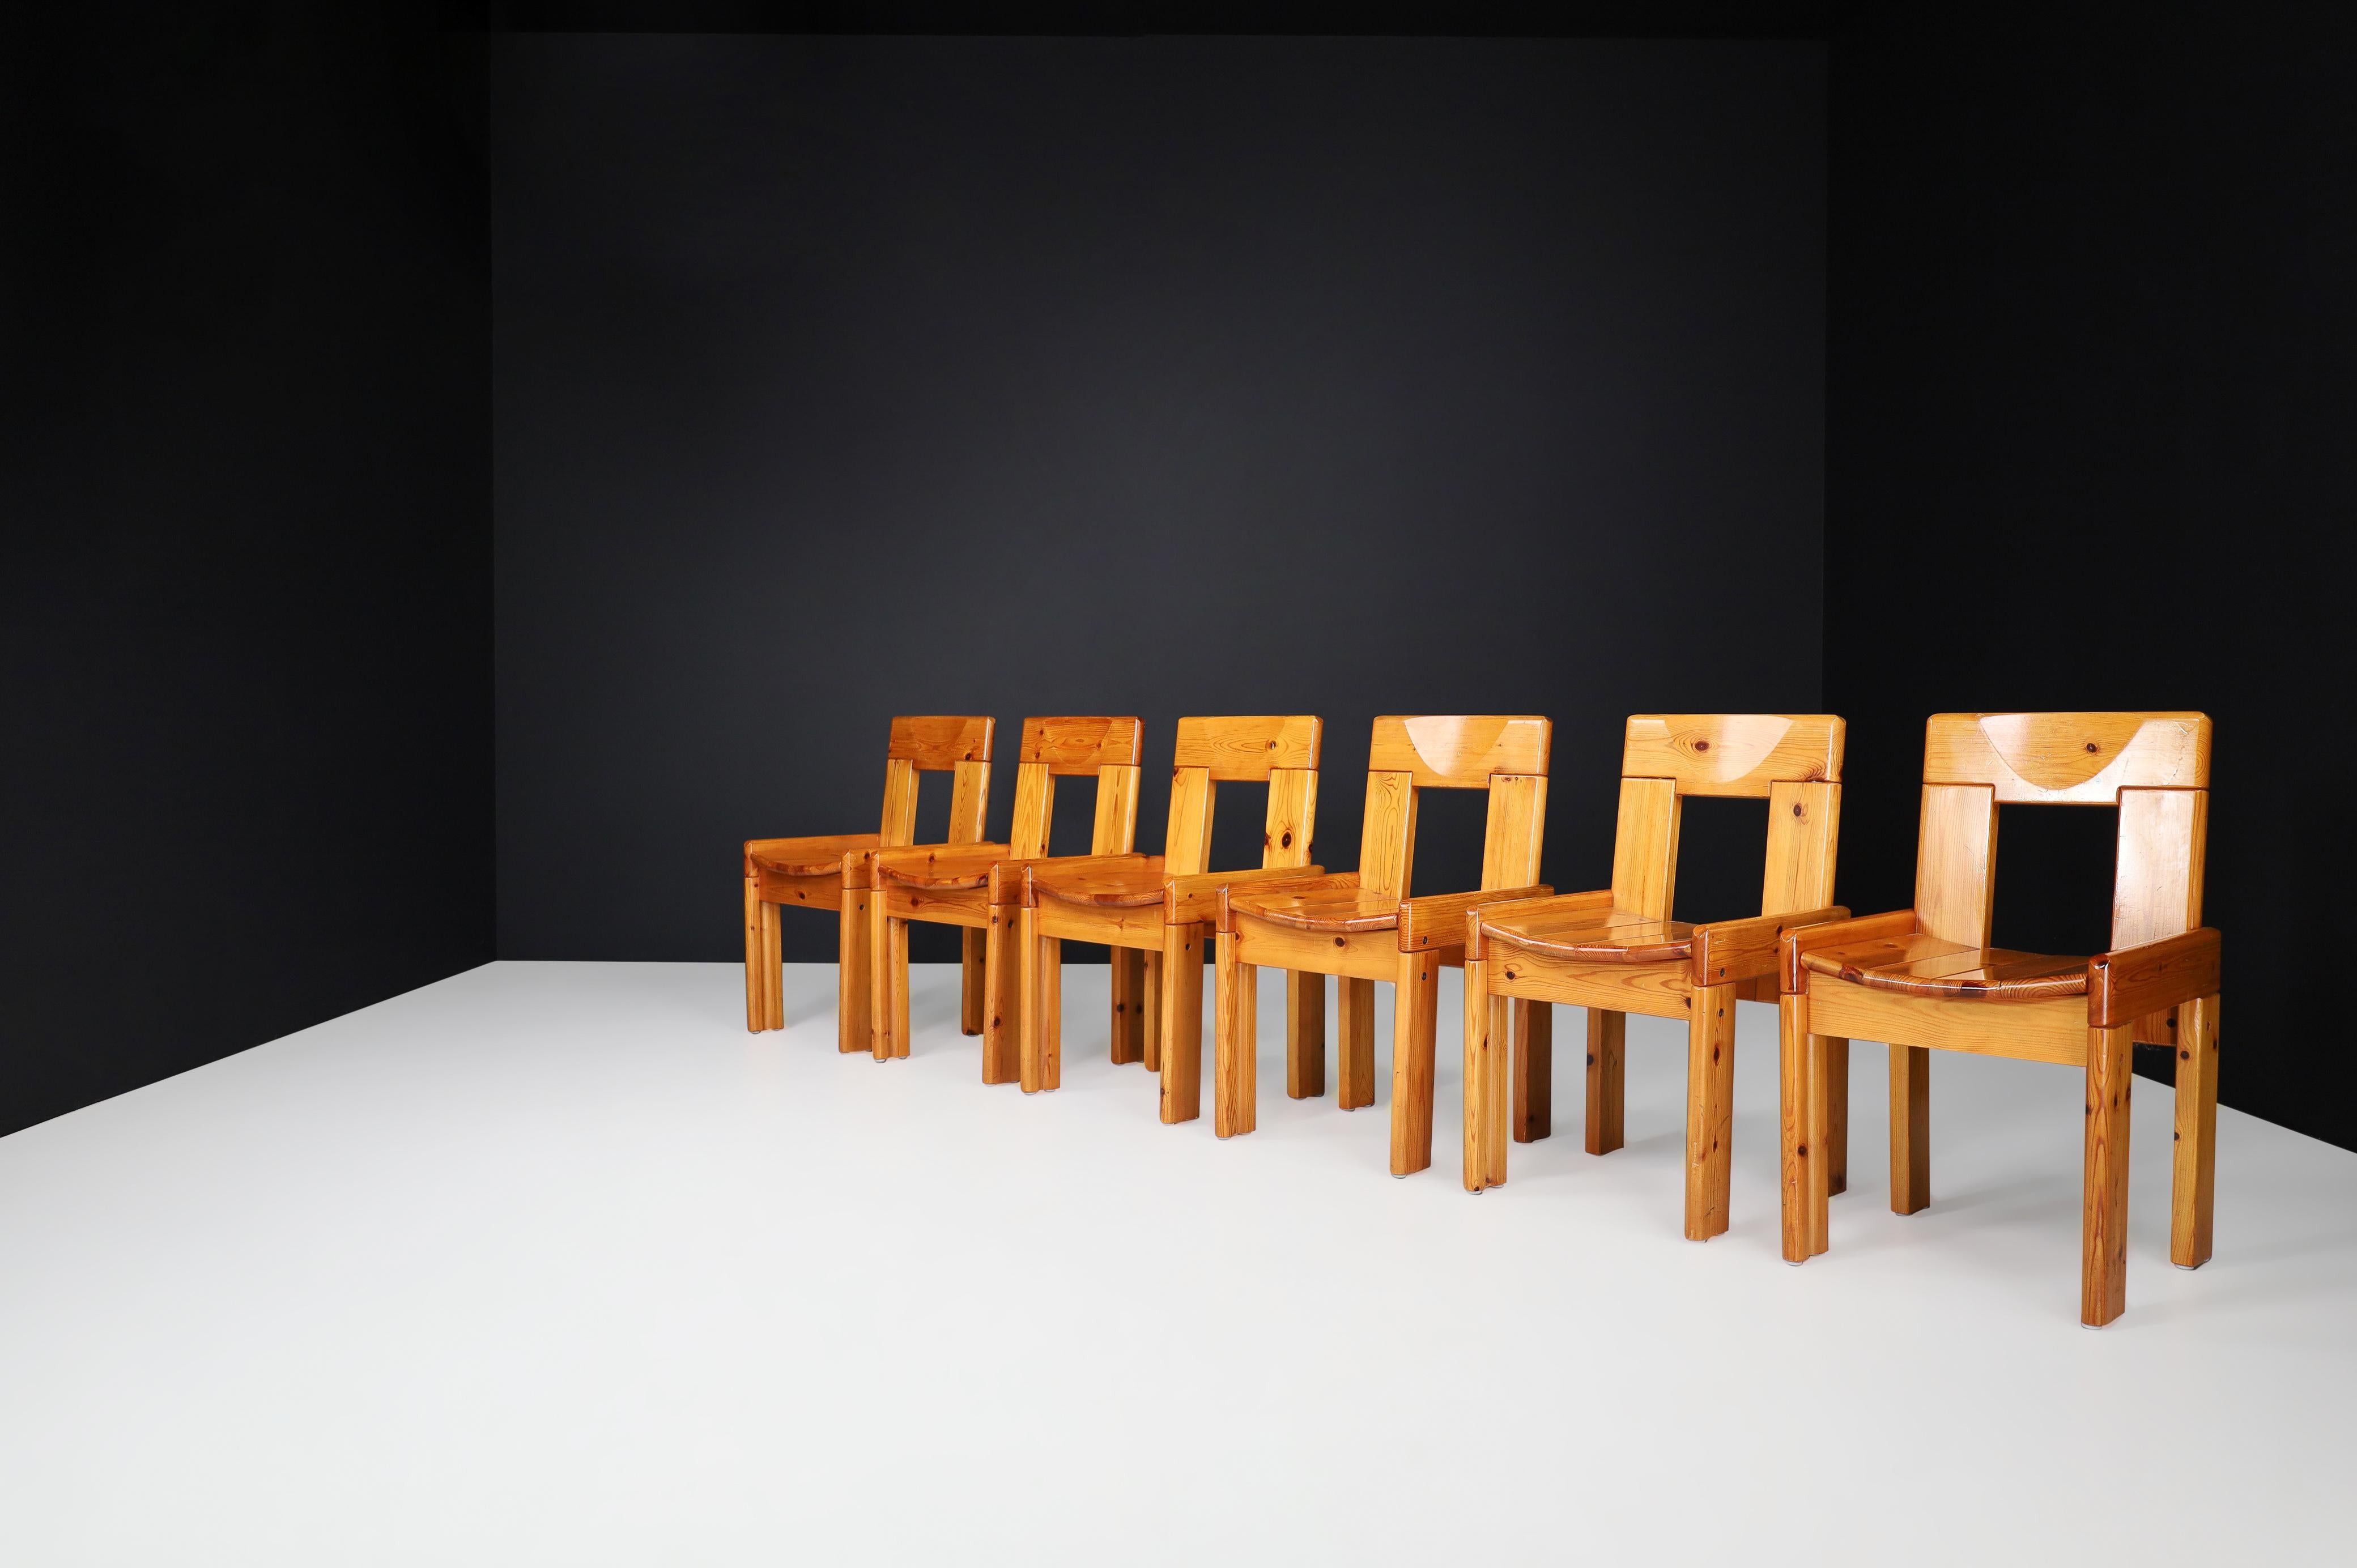 Chaises de salle à manger Silvio Coppola pour Fratelli Montina, Italie, 1970

Un fantastique ensemble de 6 chaises de salle à manger en bois de pin blond. Conçu par Silvio Coppola pour Fratelli Montina Italie. Le design constructiviste avec